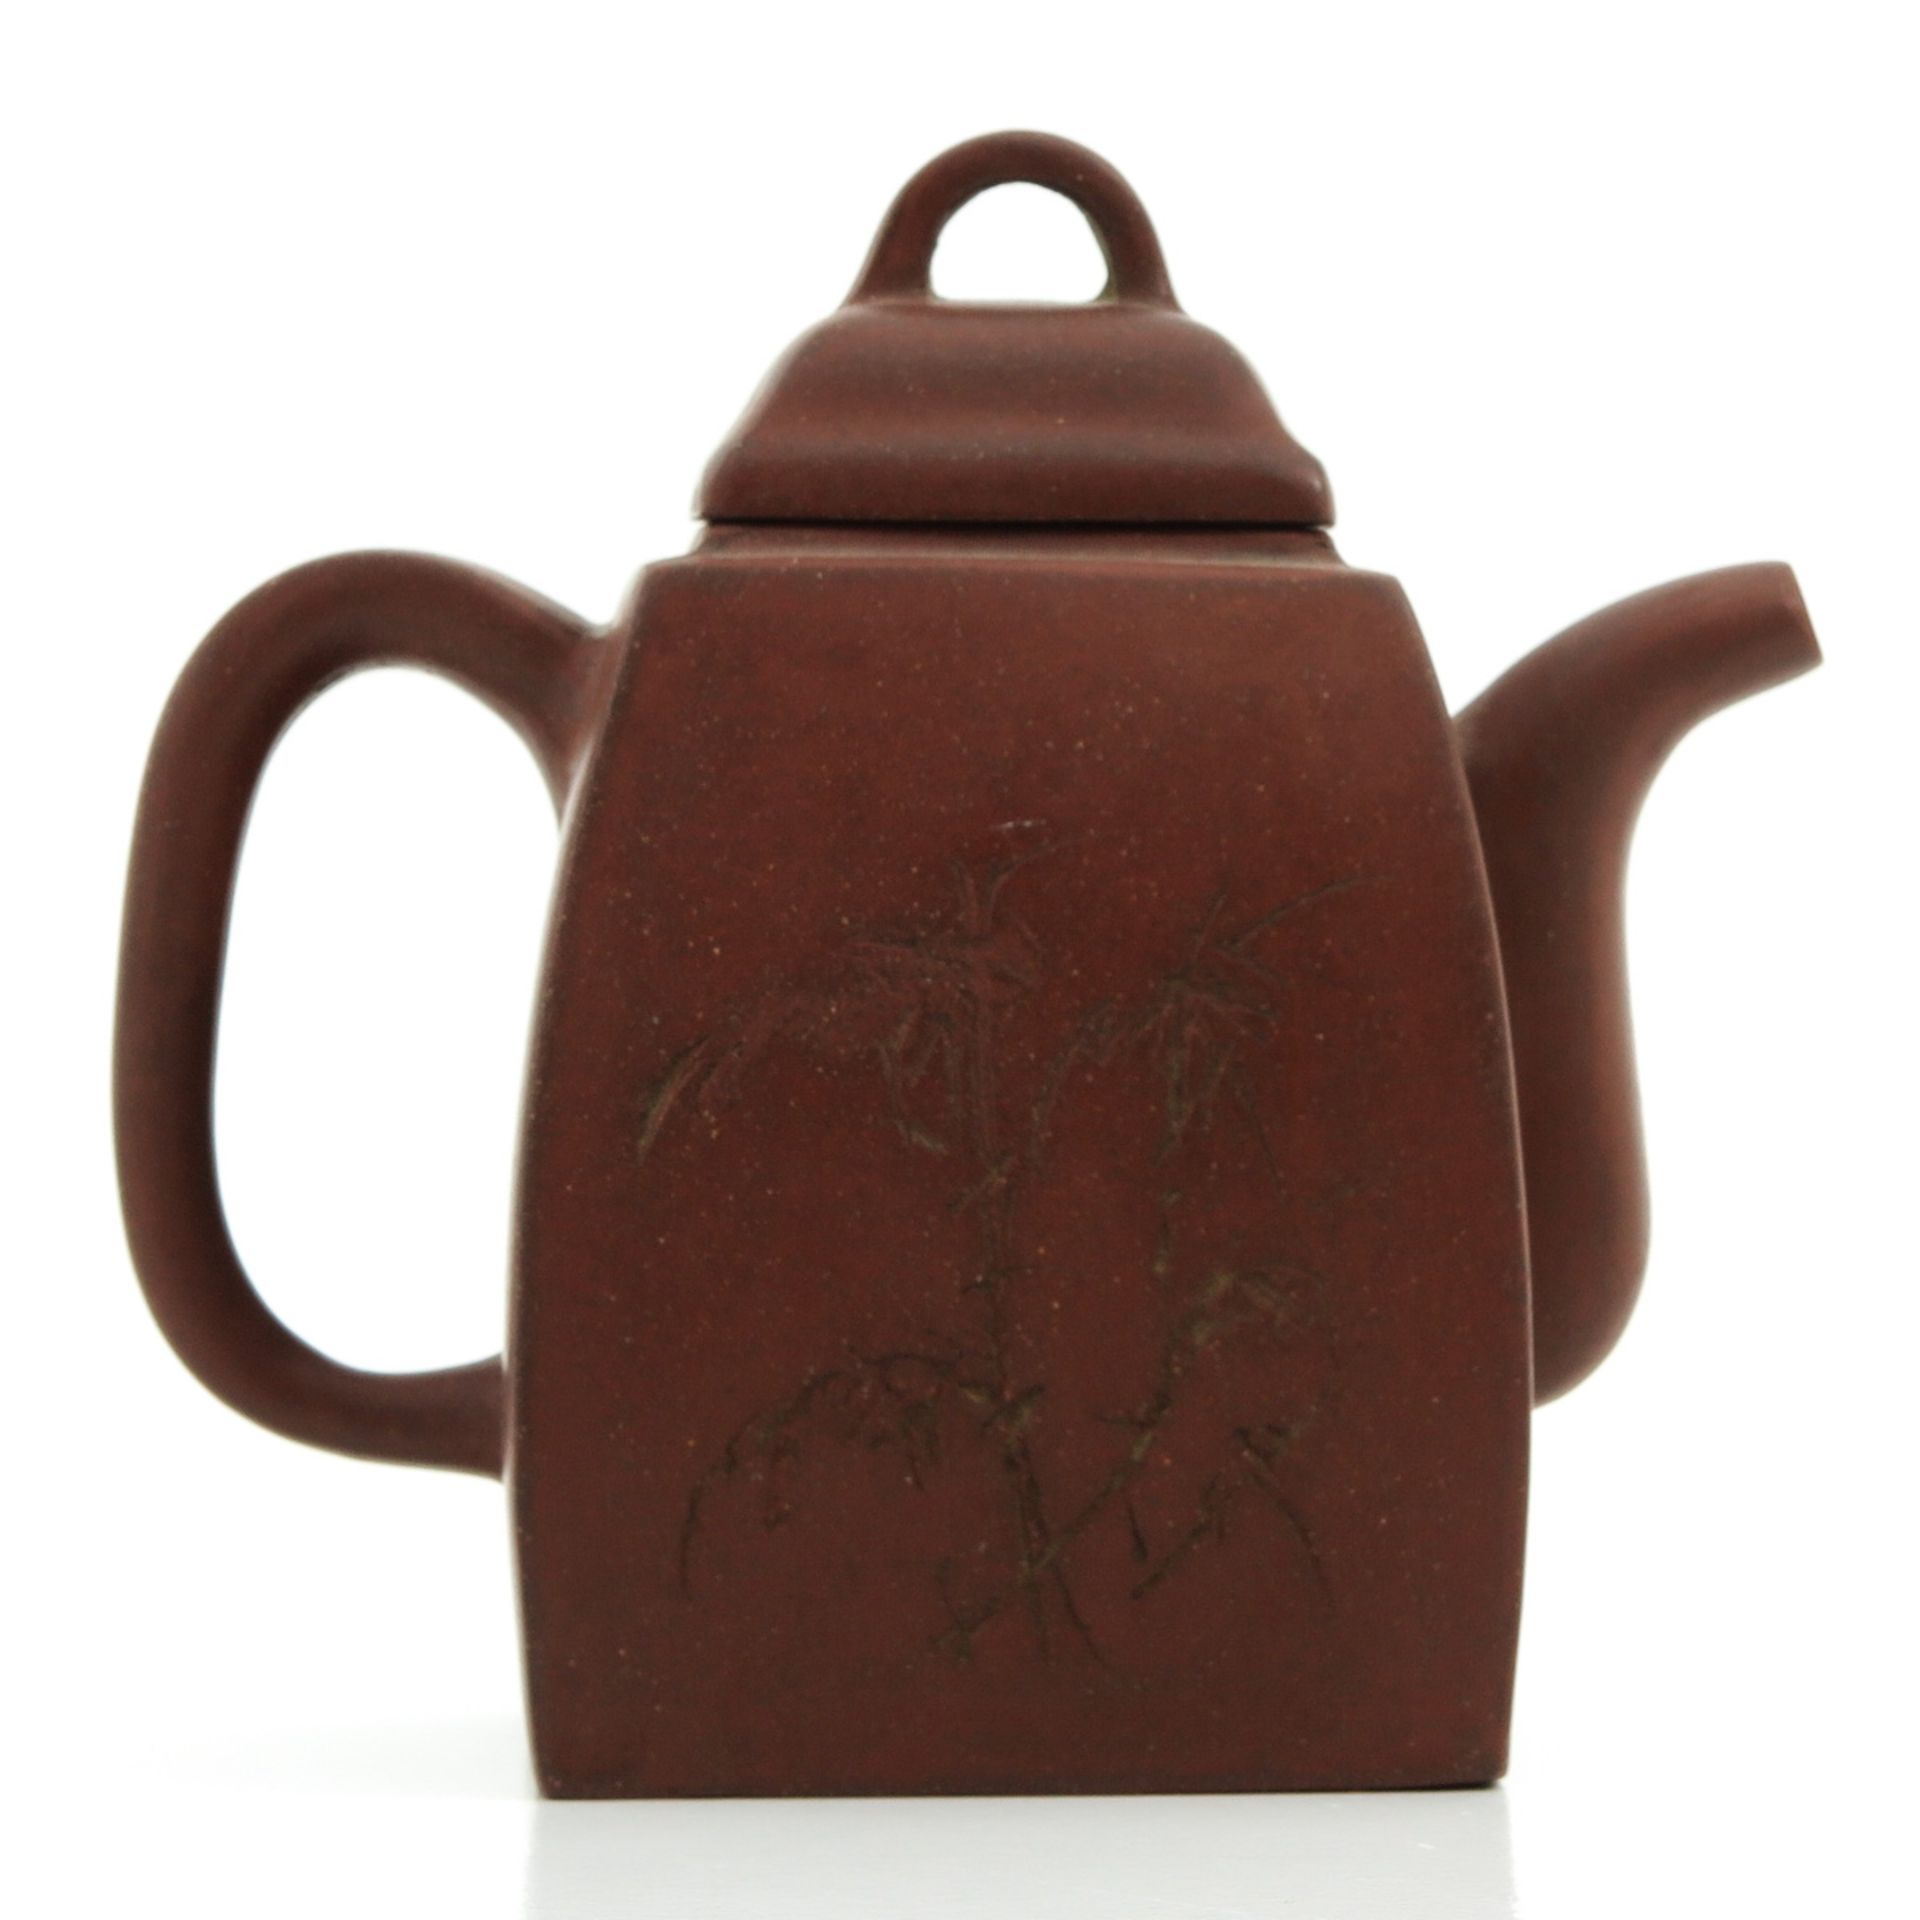 A Yixing Teapot - Image 3 of 10